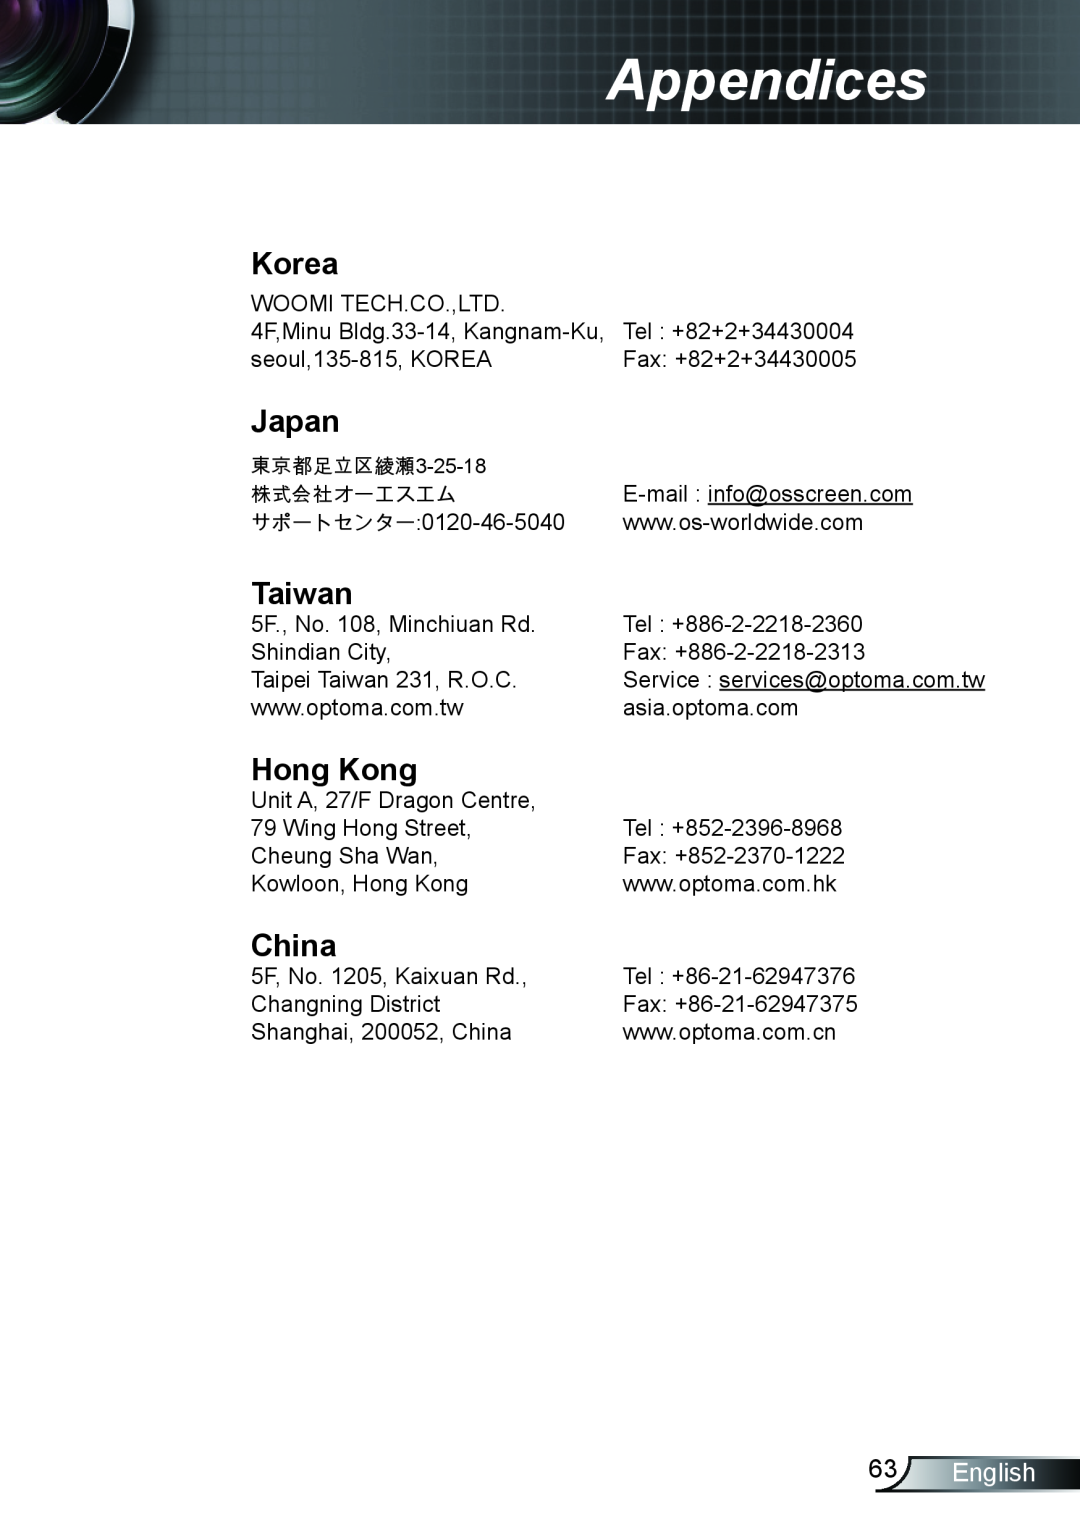 Optoma Technology TX615, EX615, EX542 manual Korea, Japan, Taiwan, Hong Kong, China, English, Appendices 